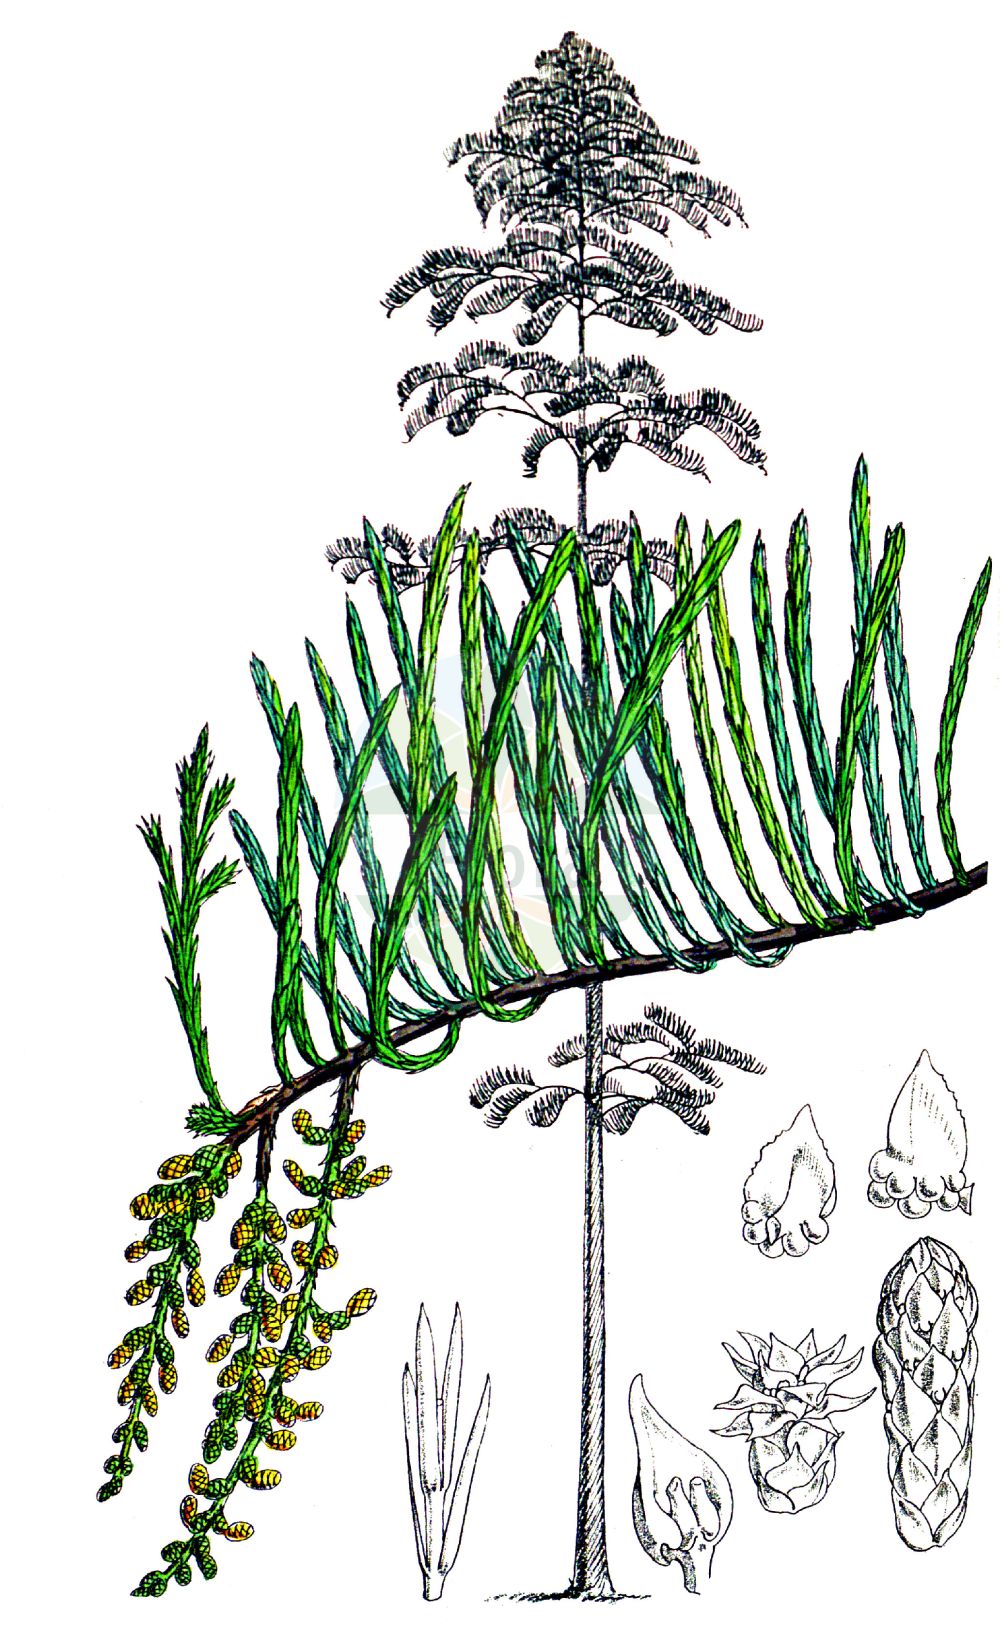 Historische Abbildung von Taxodium distichum (Echte Sumpfzypresse - Swamp Cypress). Das Bild zeigt Blatt, Bluete, Frucht und Same. ---- Historical Drawing of Taxodium distichum (Echte Sumpfzypresse - Swamp Cypress). The image is showing leaf, flower, fruit and seed.(Taxodium distichum,Echte Sumpfzypresse,Swamp Cypress,Cupressus disticha,Taxodium distichum,Echte Sumpfzypresse,Swamp Cypress,American Bald Cypress,Pond Cypress,Bald Cypress,Gulf Cypress,Red Cypress,Southern Cypress,Yellow Cypress,Taxodium,Sumpfzypresse,Bald Cypress,Cupressaceae,Zypressengewächse,Cypress family,Blatt,Bluete,Frucht,Same,leaf,flower,fruit,seed,Fitch et al. (1880))